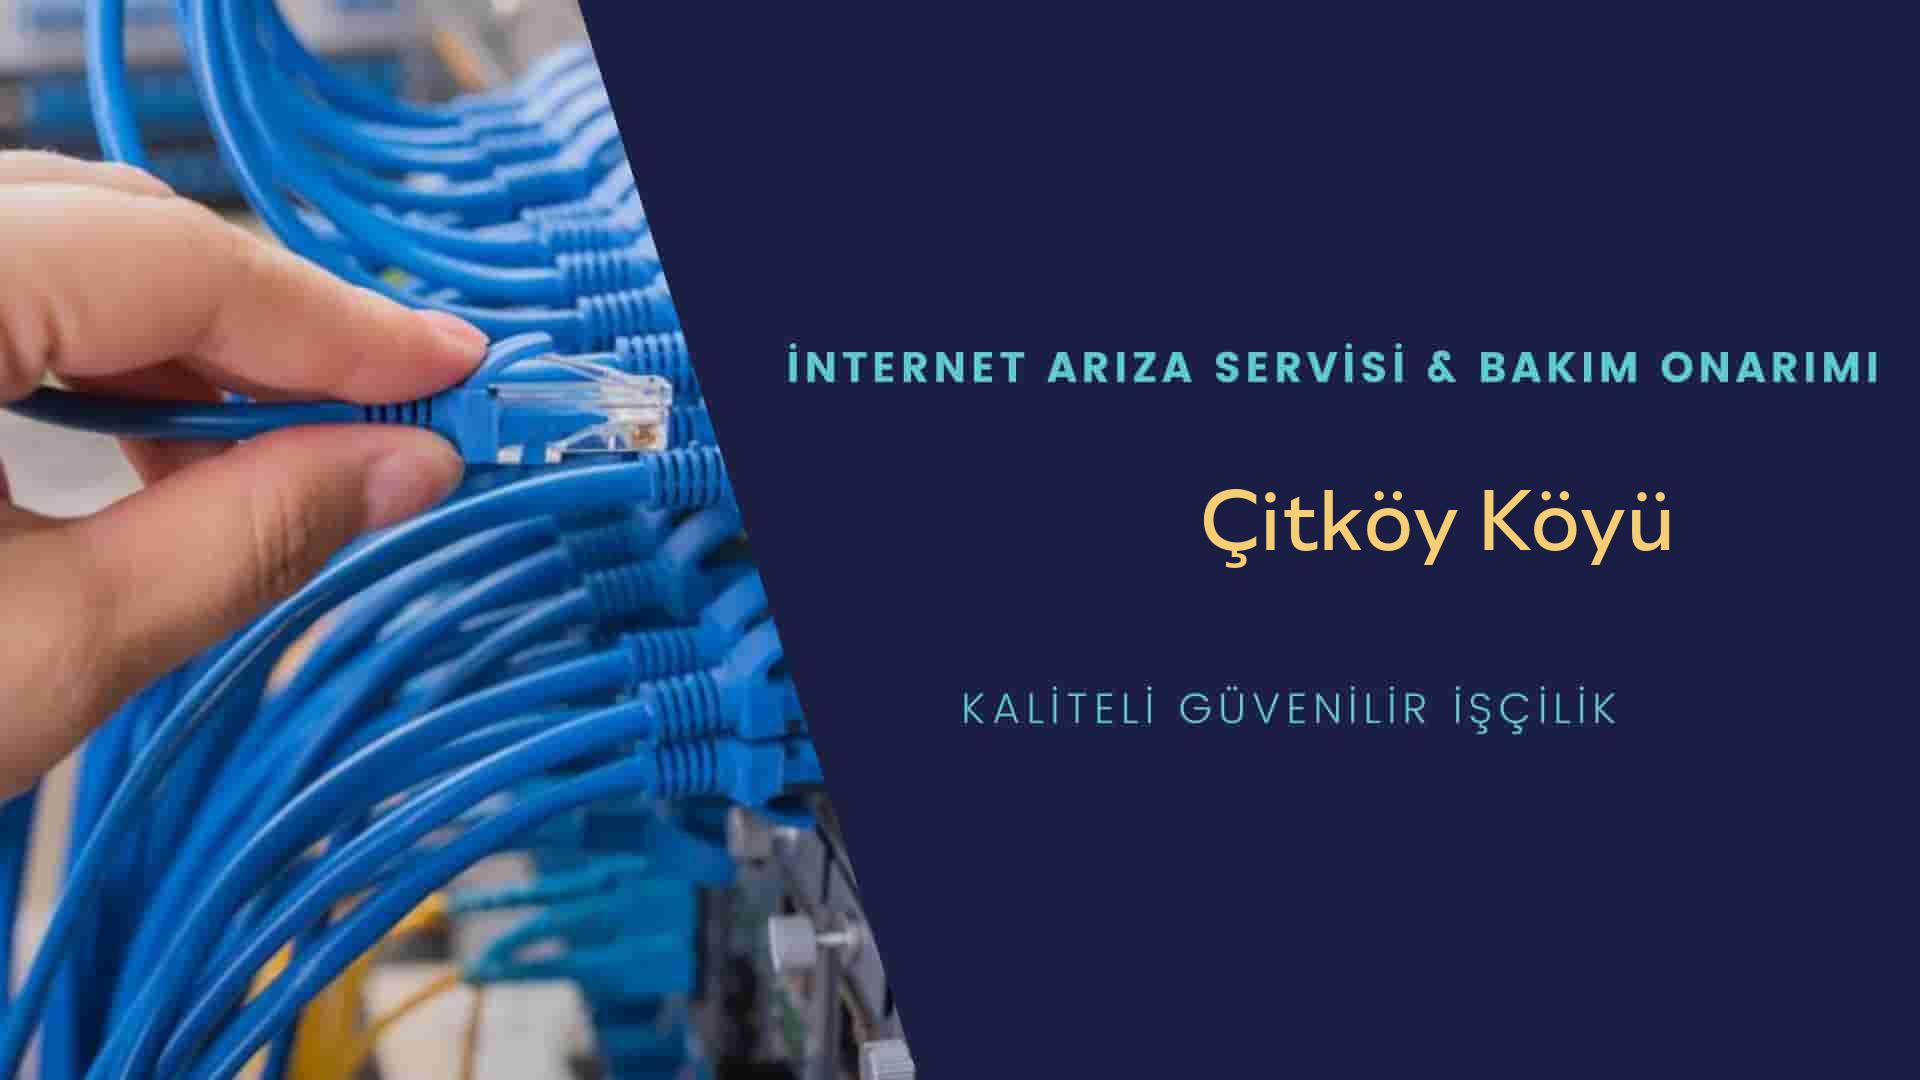 Çitköy Köyü internet kablosu çekimi yapan yerler veya elektrikçiler mi? arıyorsunuz doğru yerdesiniz o zaman sizlere 7/24 yardımcı olacak profesyonel ustalarımız bir telefon kadar yakındır size.